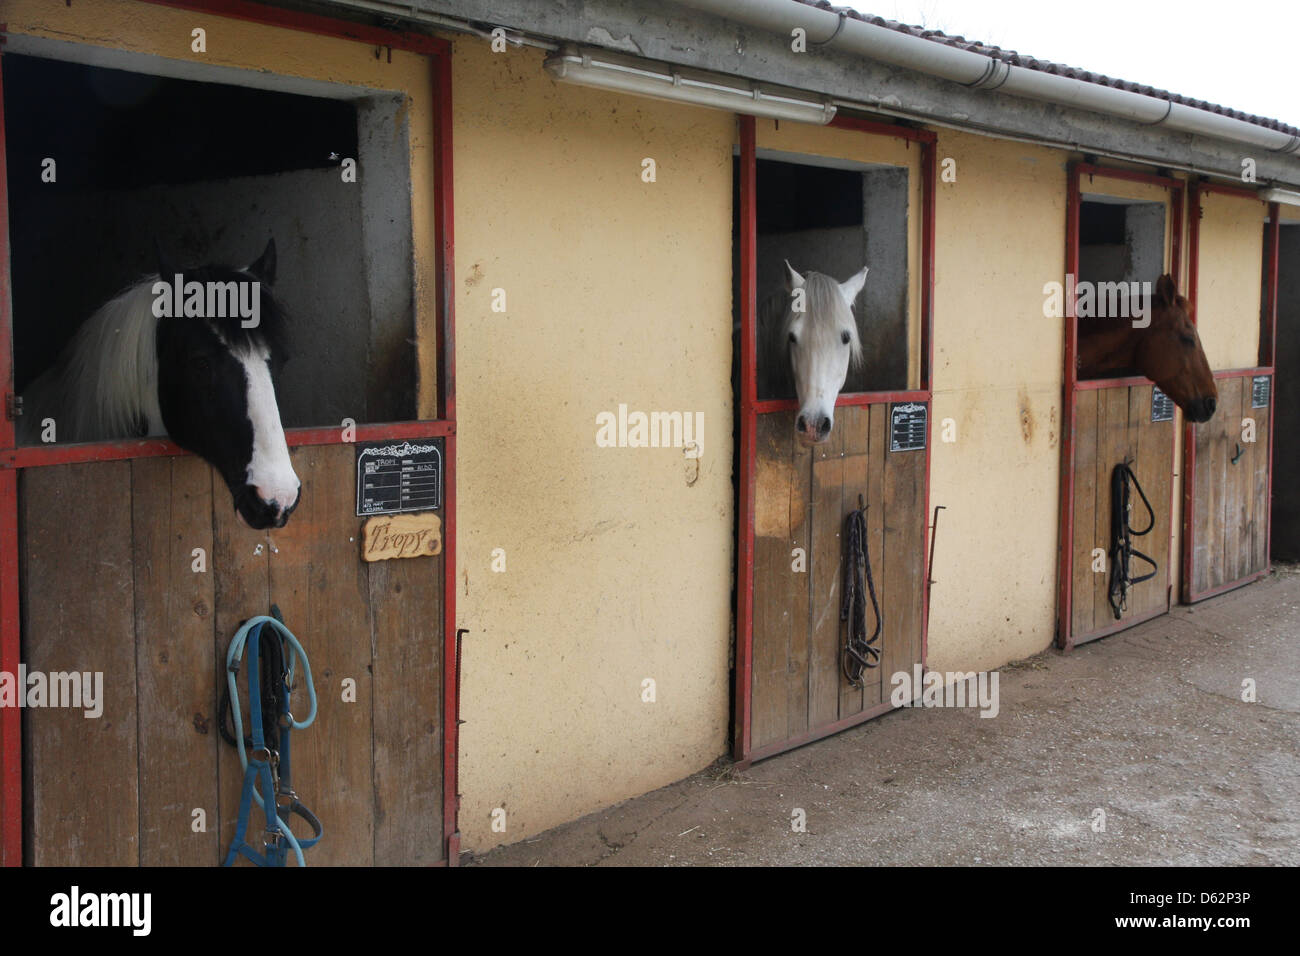 Etalons cheval puissant dans l'enceinte d'une grange d'une école d'équitation Banque D'Images